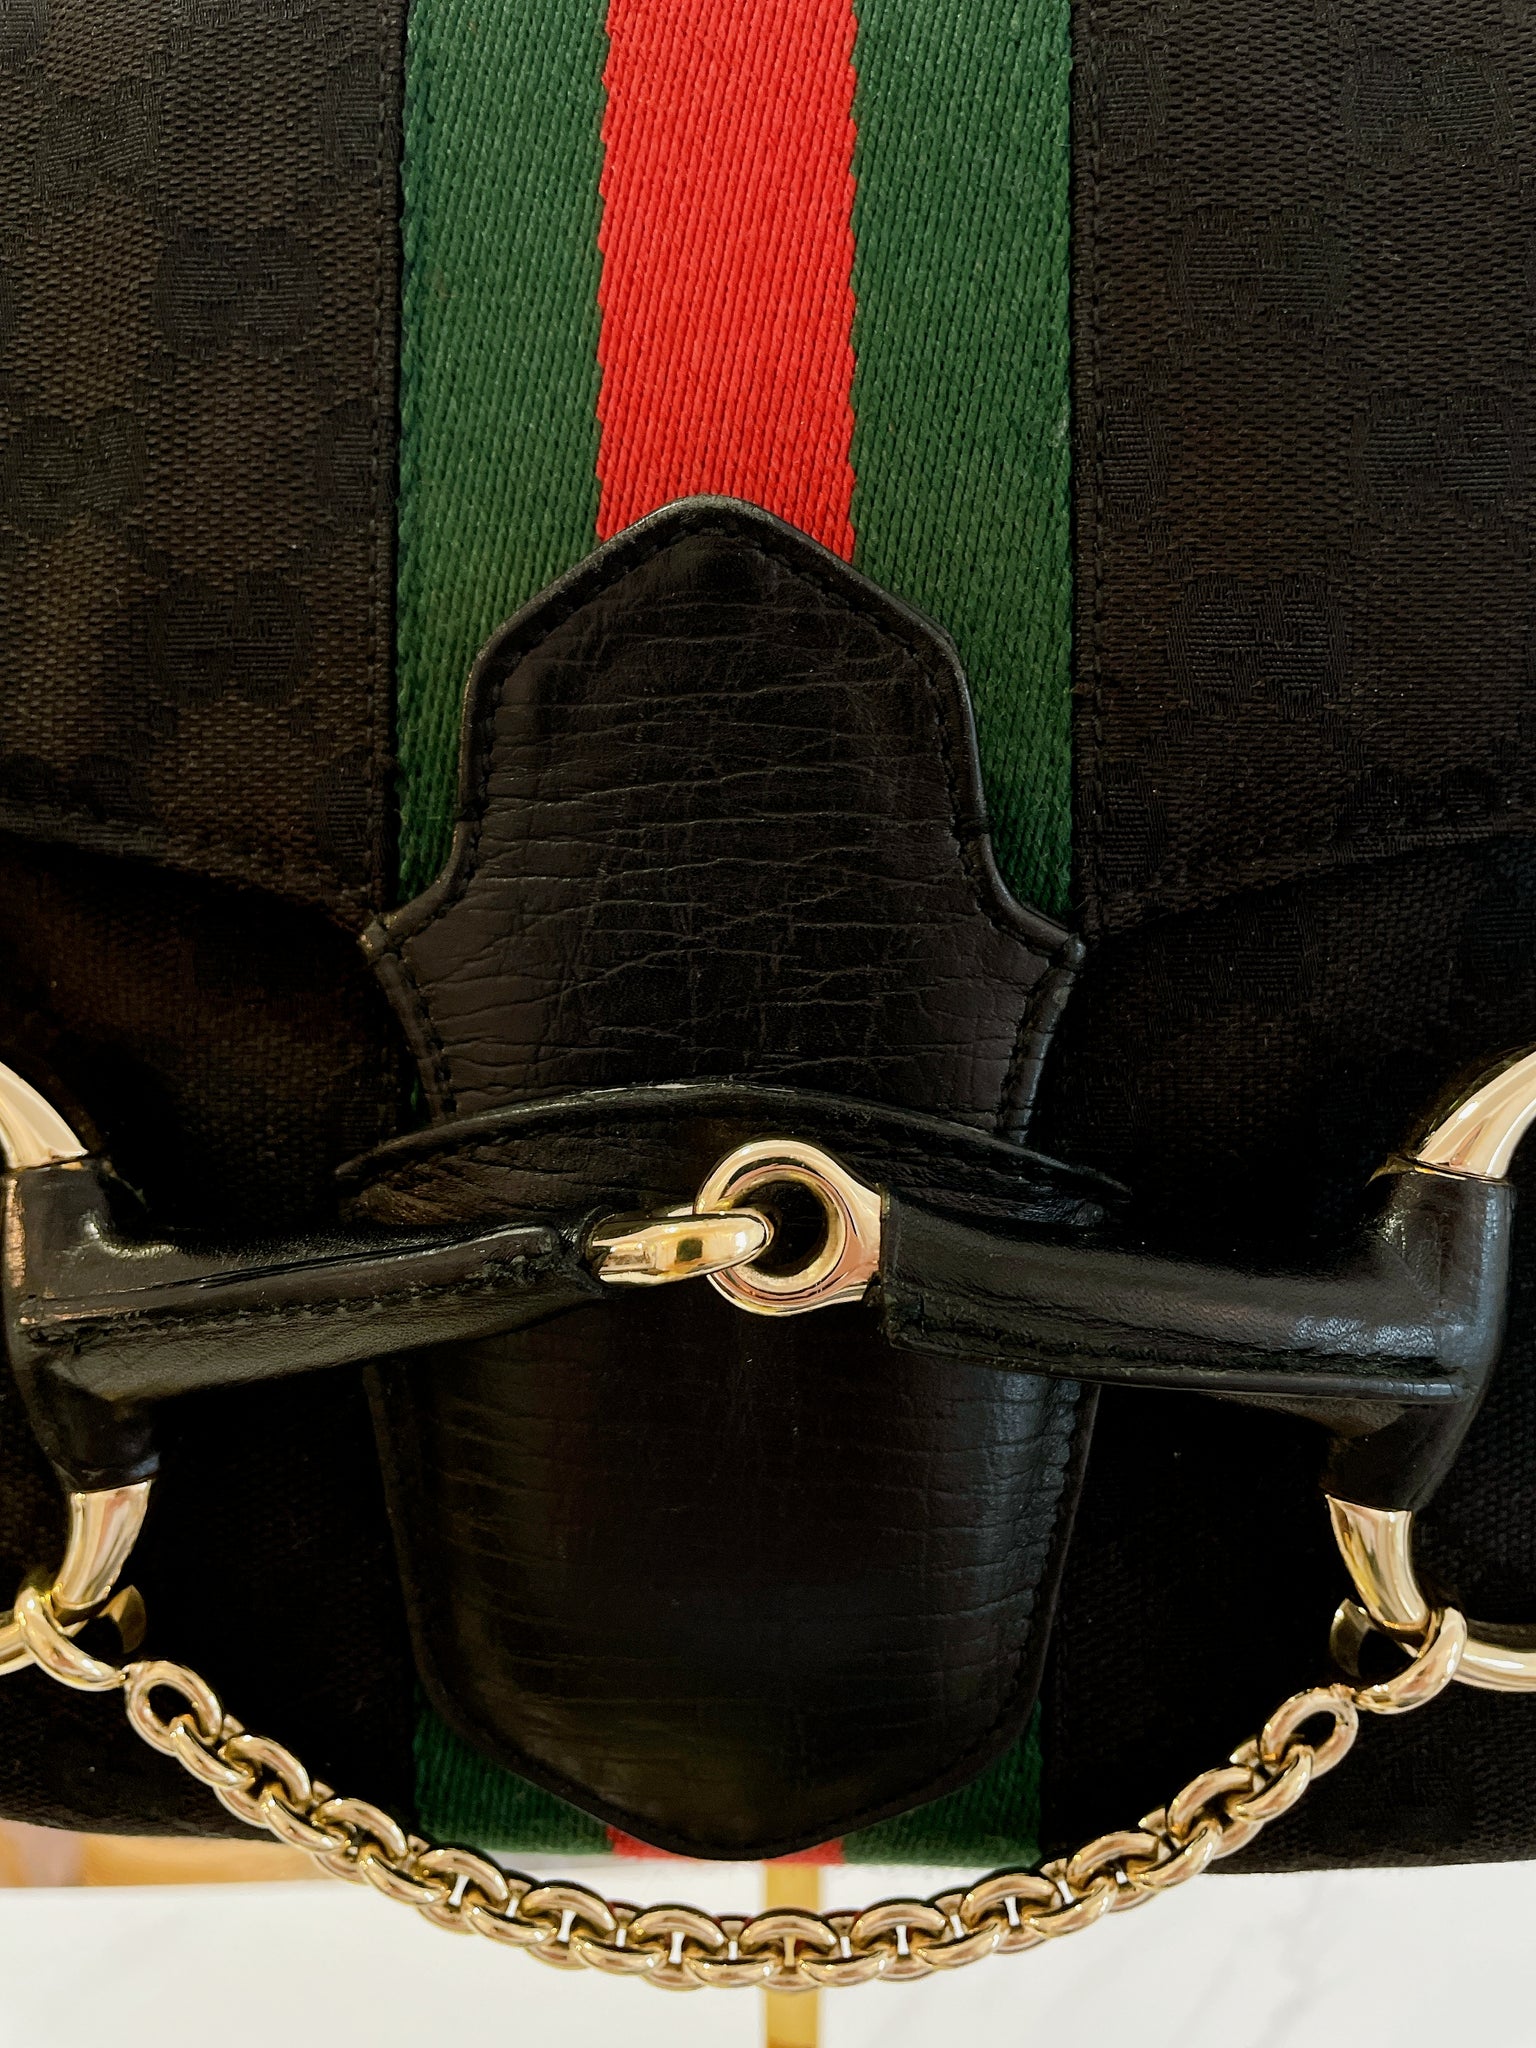 FWRD Renew Gucci Horsebit 1955 Shoulder Bag in Black